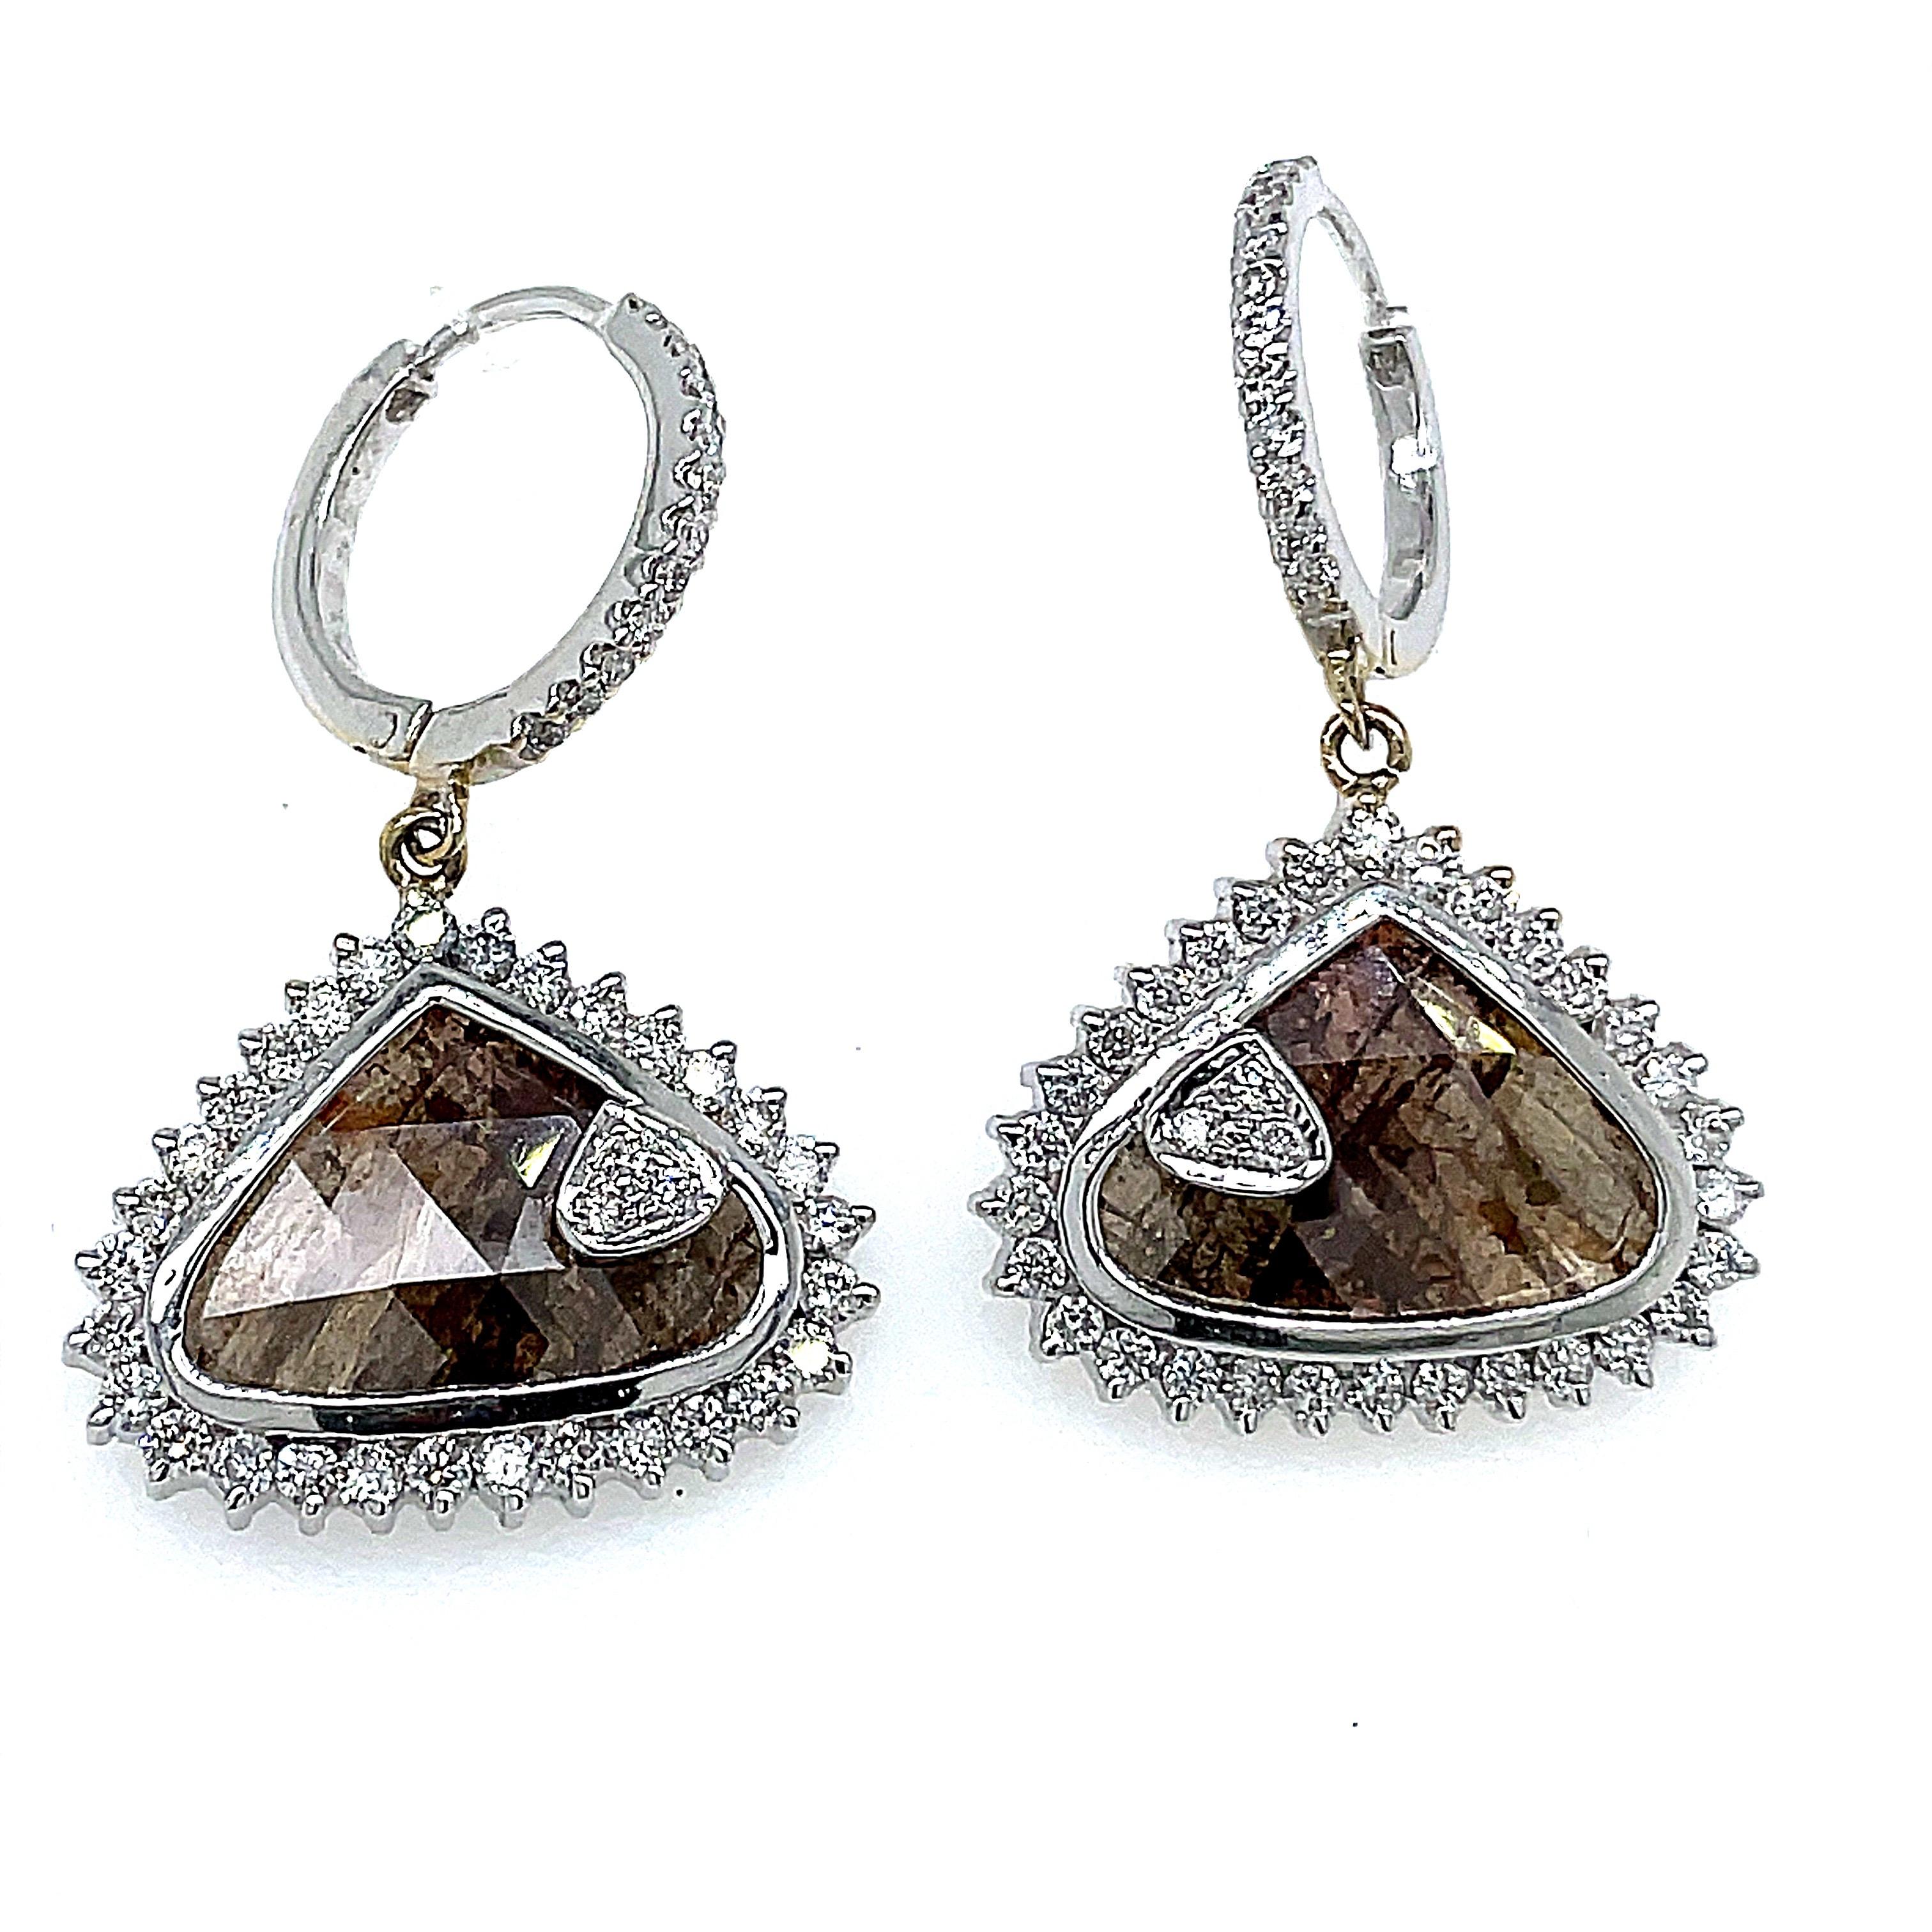 18k Weißgold Fancy Brown Diamant-Ohrringe

Die mit viel Liebe zum Detail gefertigten Ohrringe zeigen ein Paar von  glänzende braune Diamanten von 7,18 Karat mit einem Gewicht von 8,16 Gramm, perfekt eingefasst in eine hochwertige Metallfassung aus